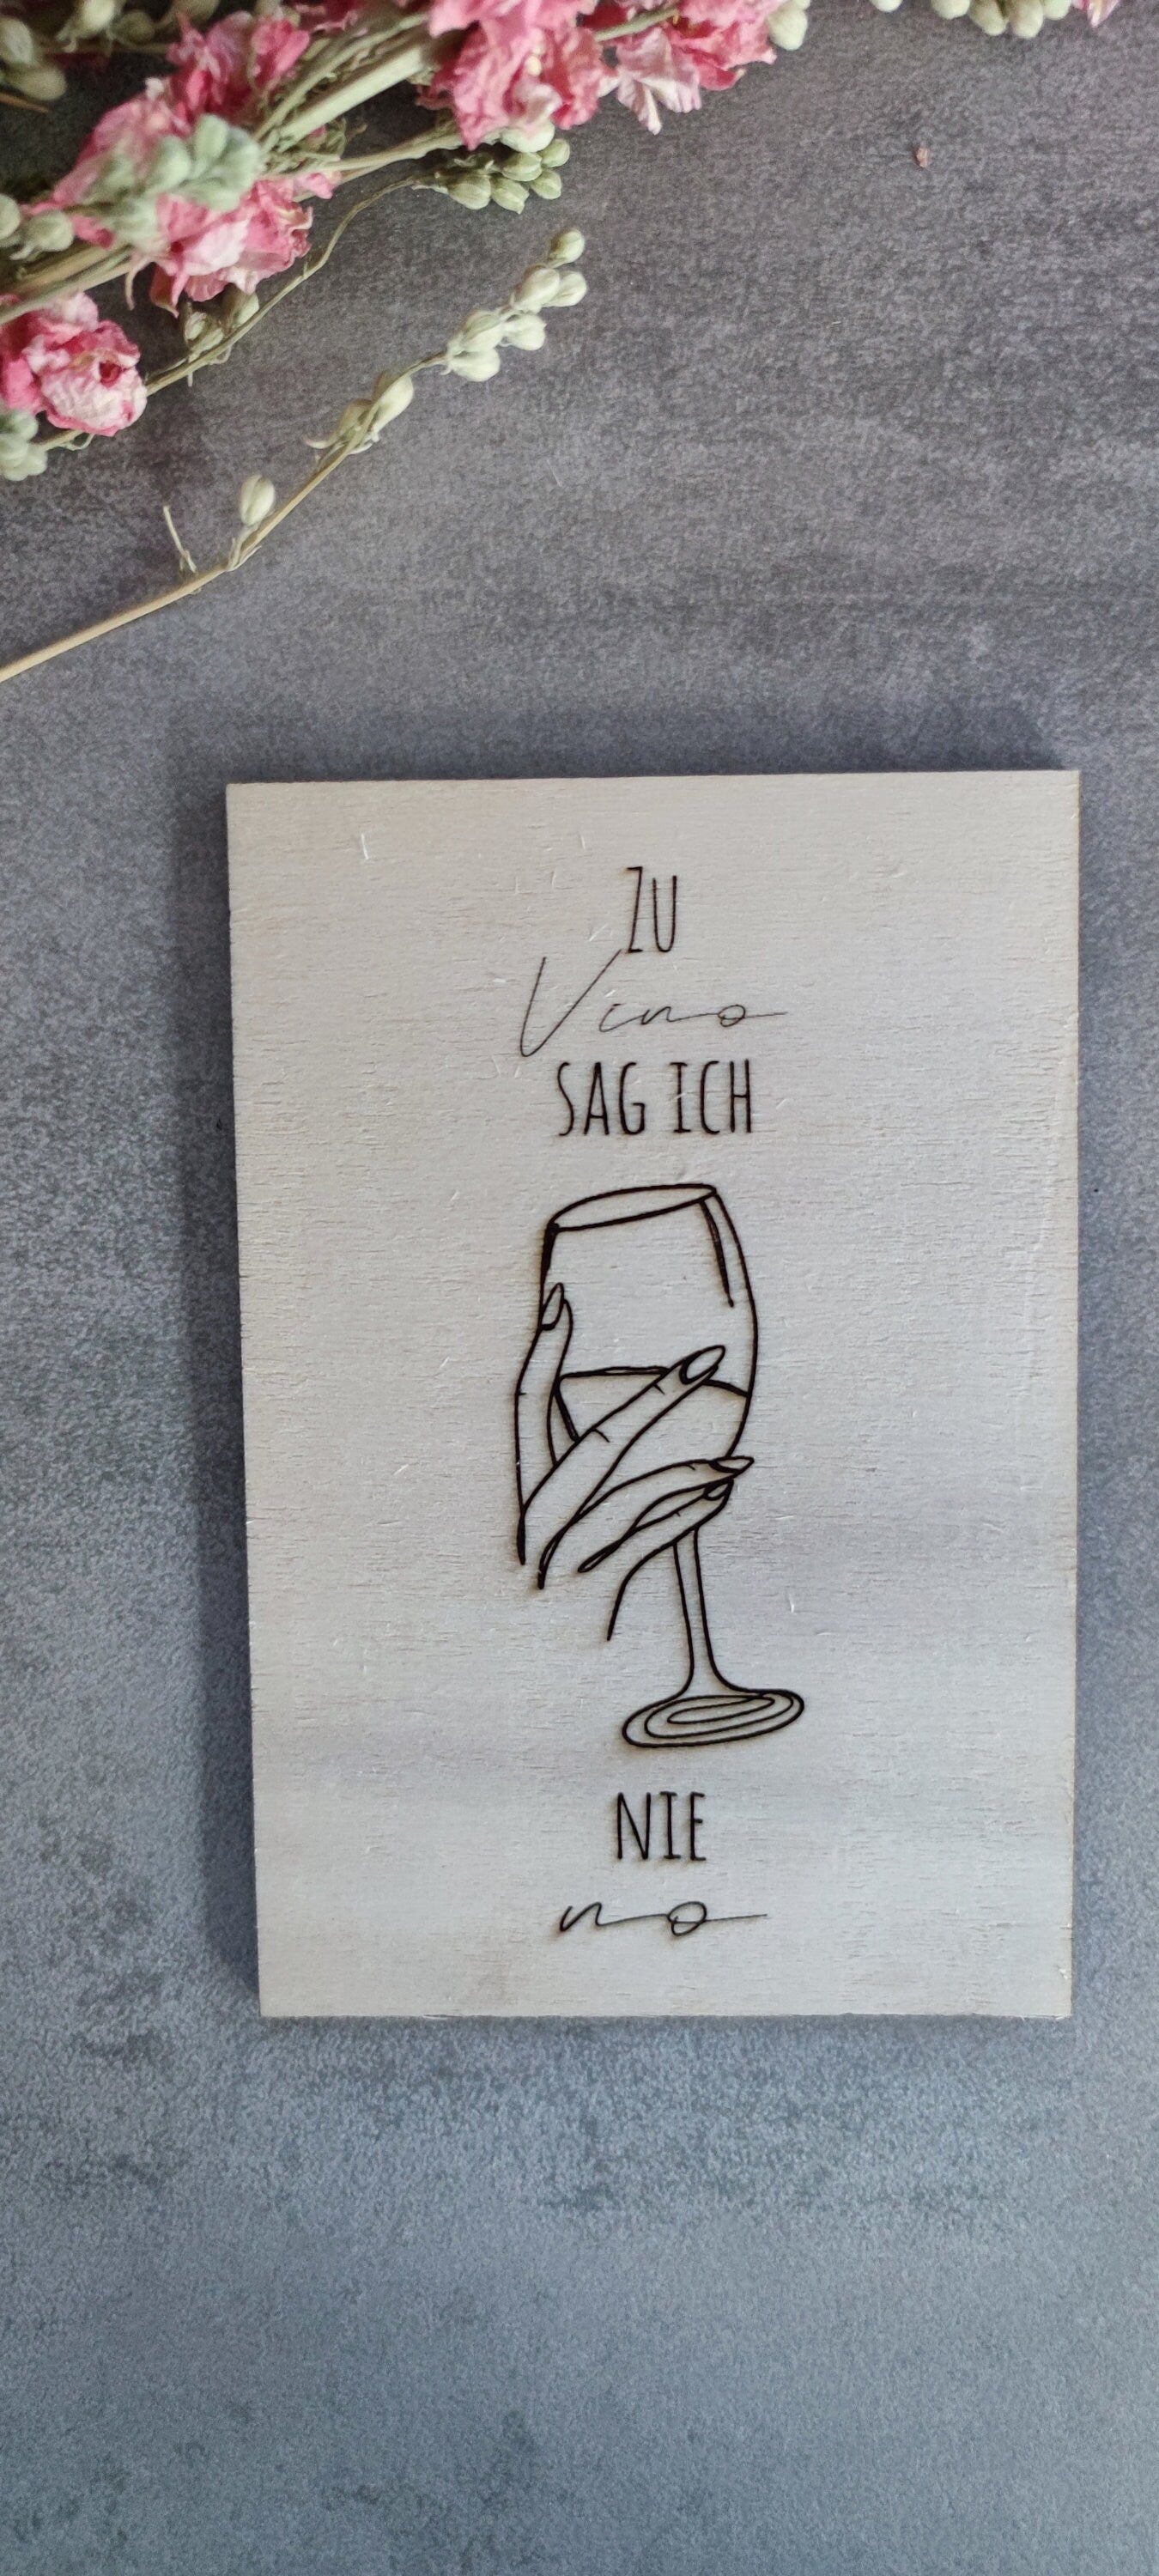 Bild aus Holz "Zu Vino sag ich nie no"/Holzbild/Bild mit Spruch/Weinspruch/Weinsprüche/Bild mit Weinspruch